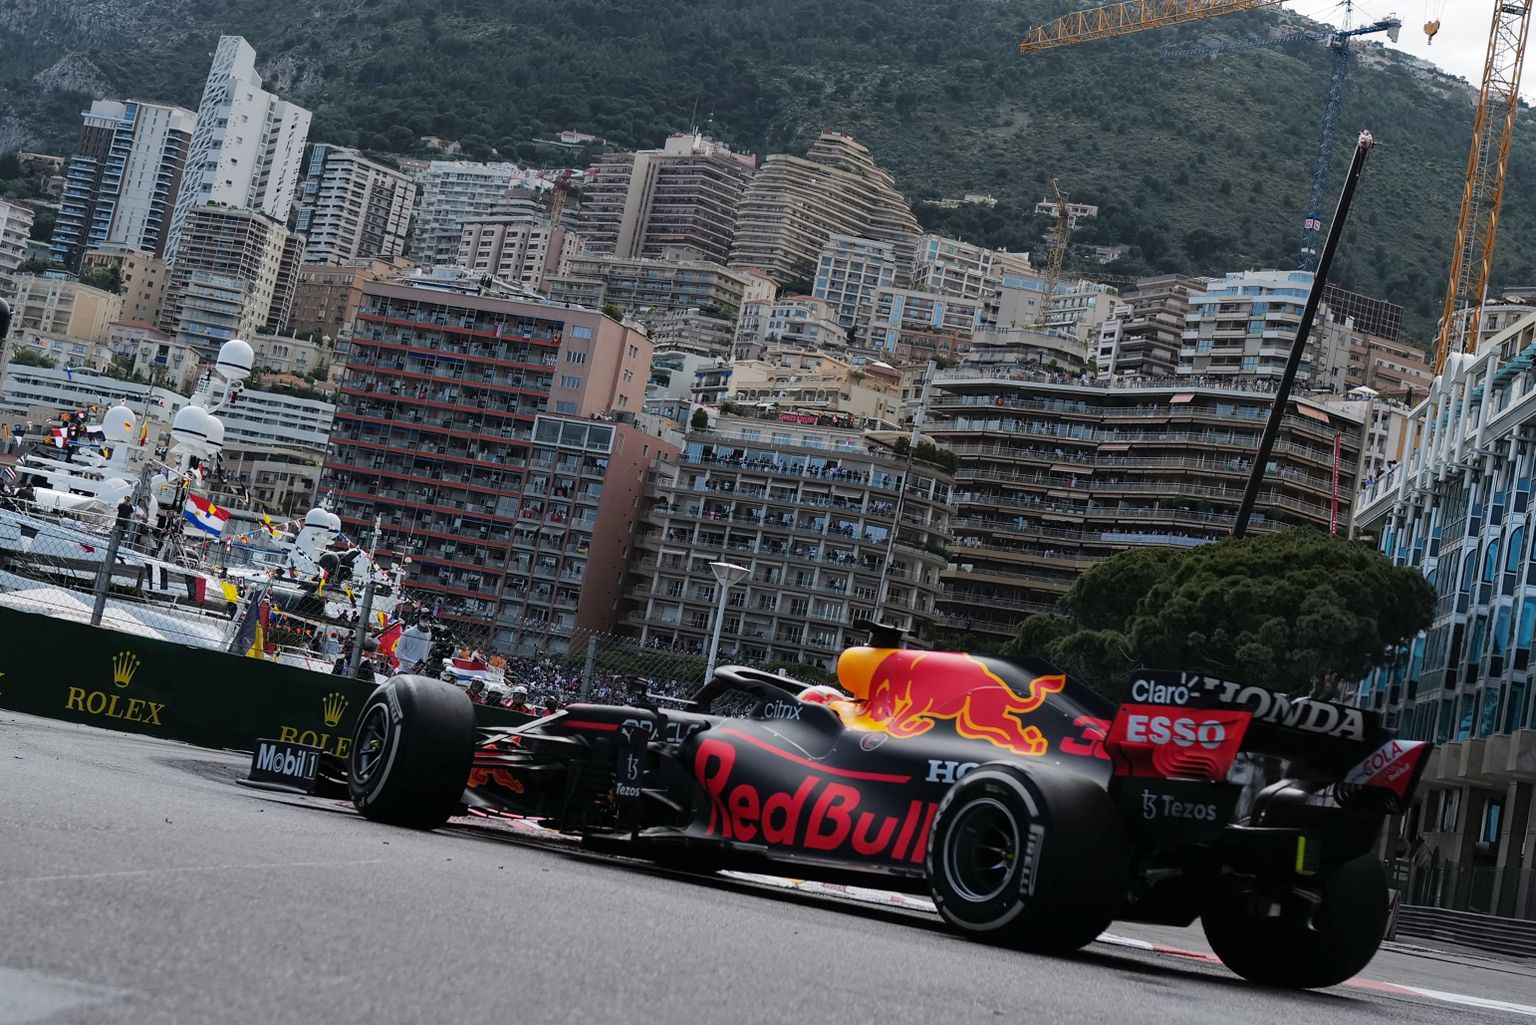 Monaco GP pakub vaateid, mida juba teistelt võidusõitudelt ei leia.